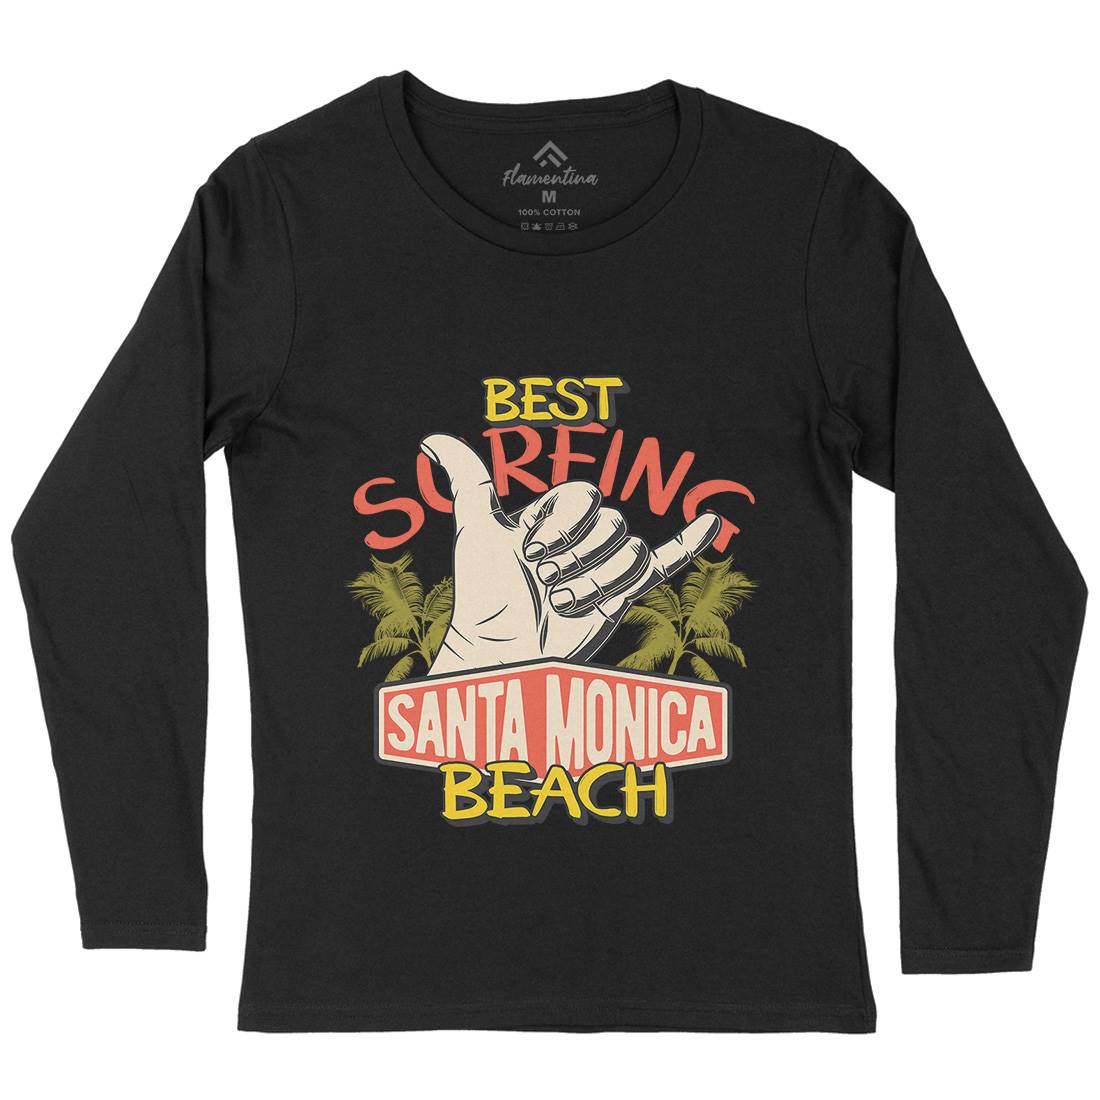 Best Surfing Beach Womens Long Sleeve T-Shirt Surf D909